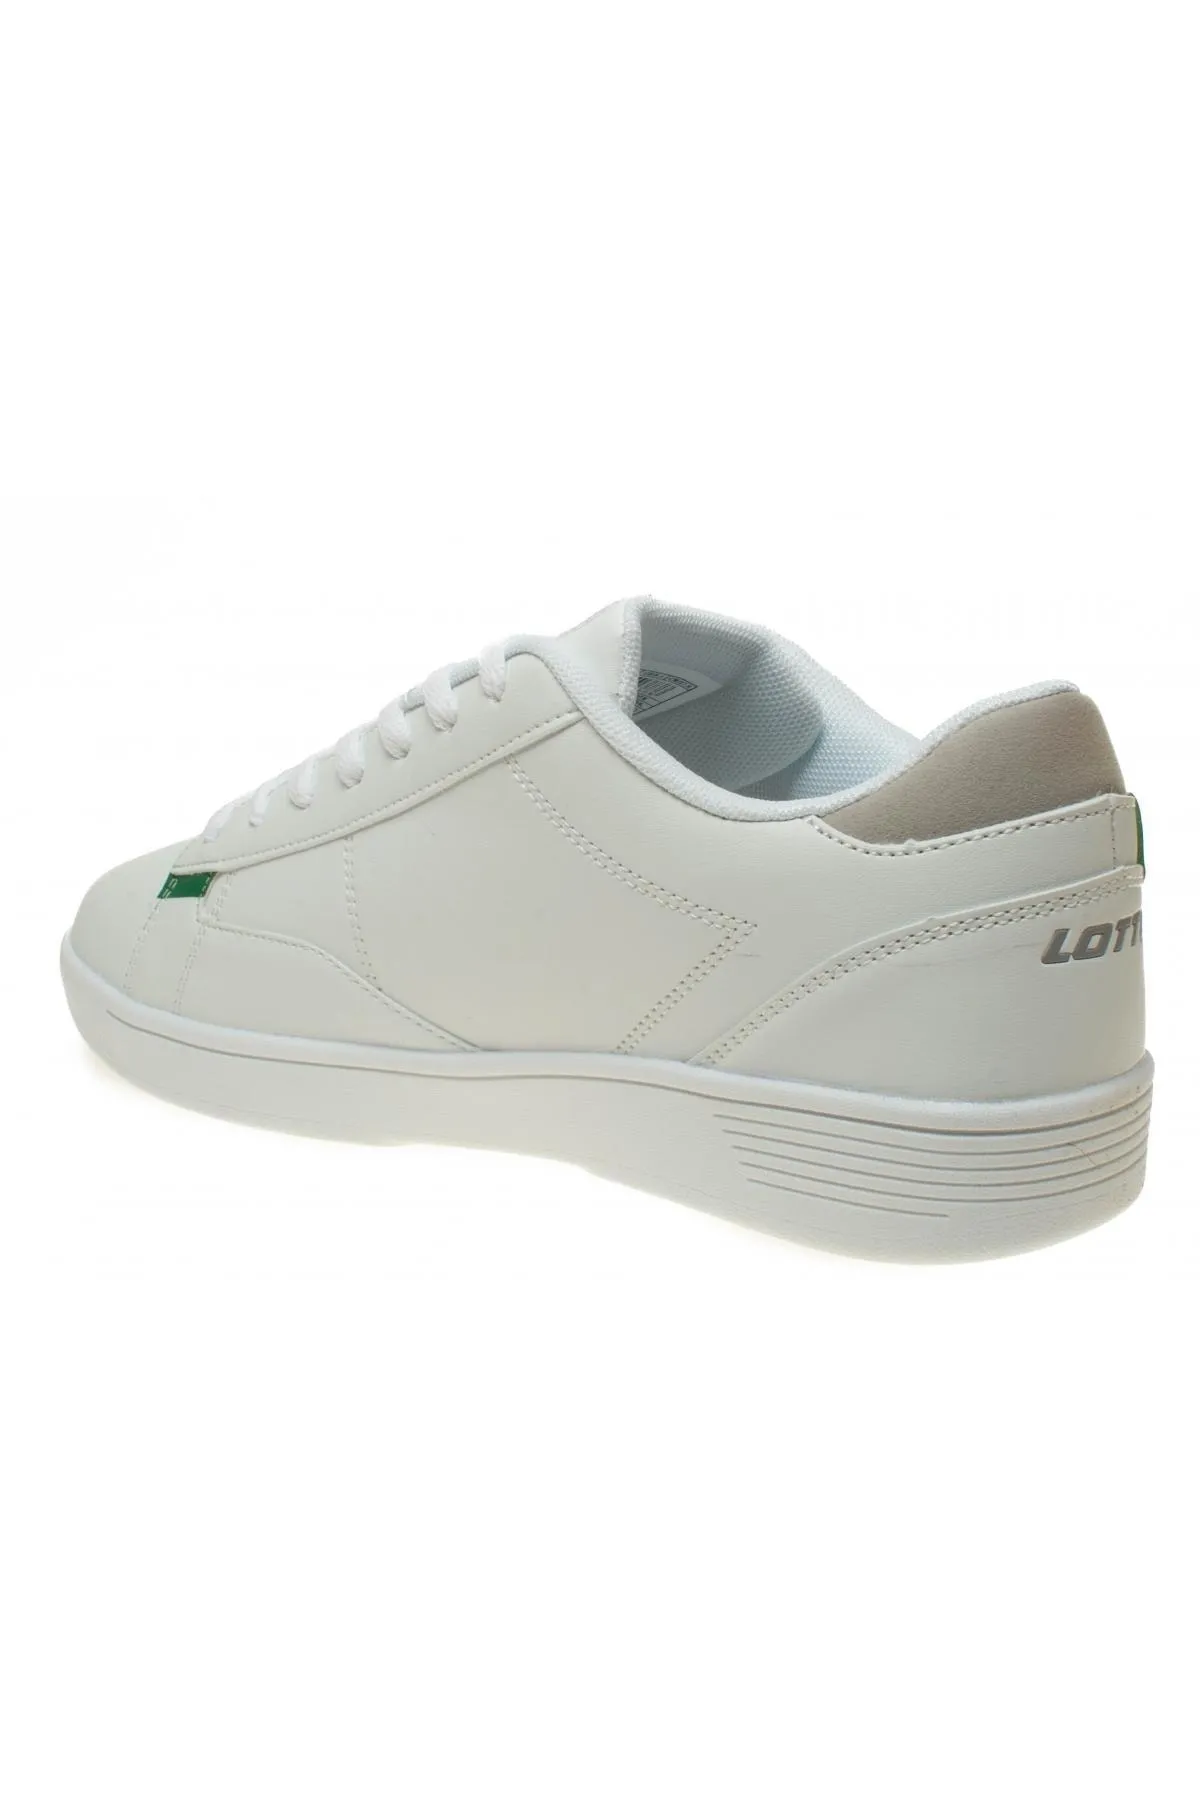 Loda-M 3Fx Günlük Erkek Spor Ayakkabı-Beyaz